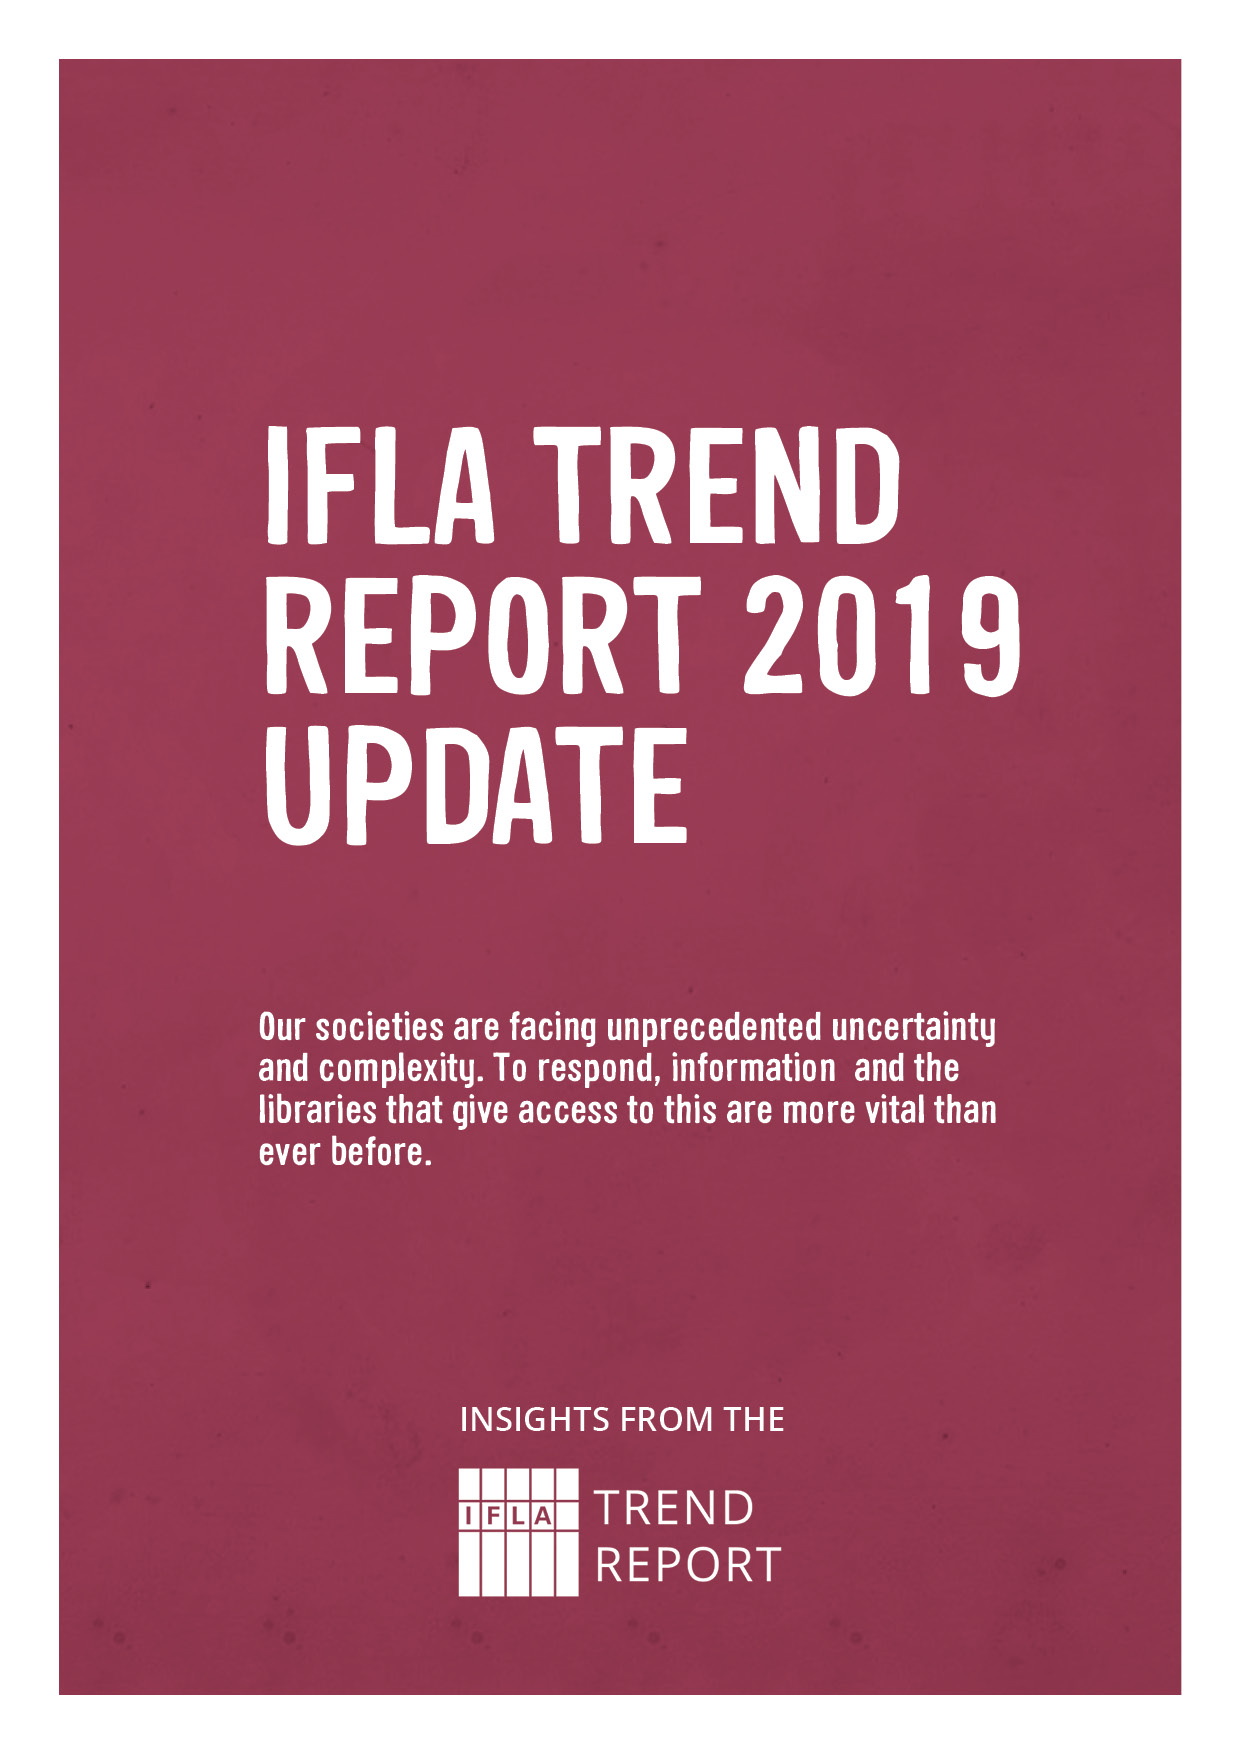 IFLA Trend Report Update 2019